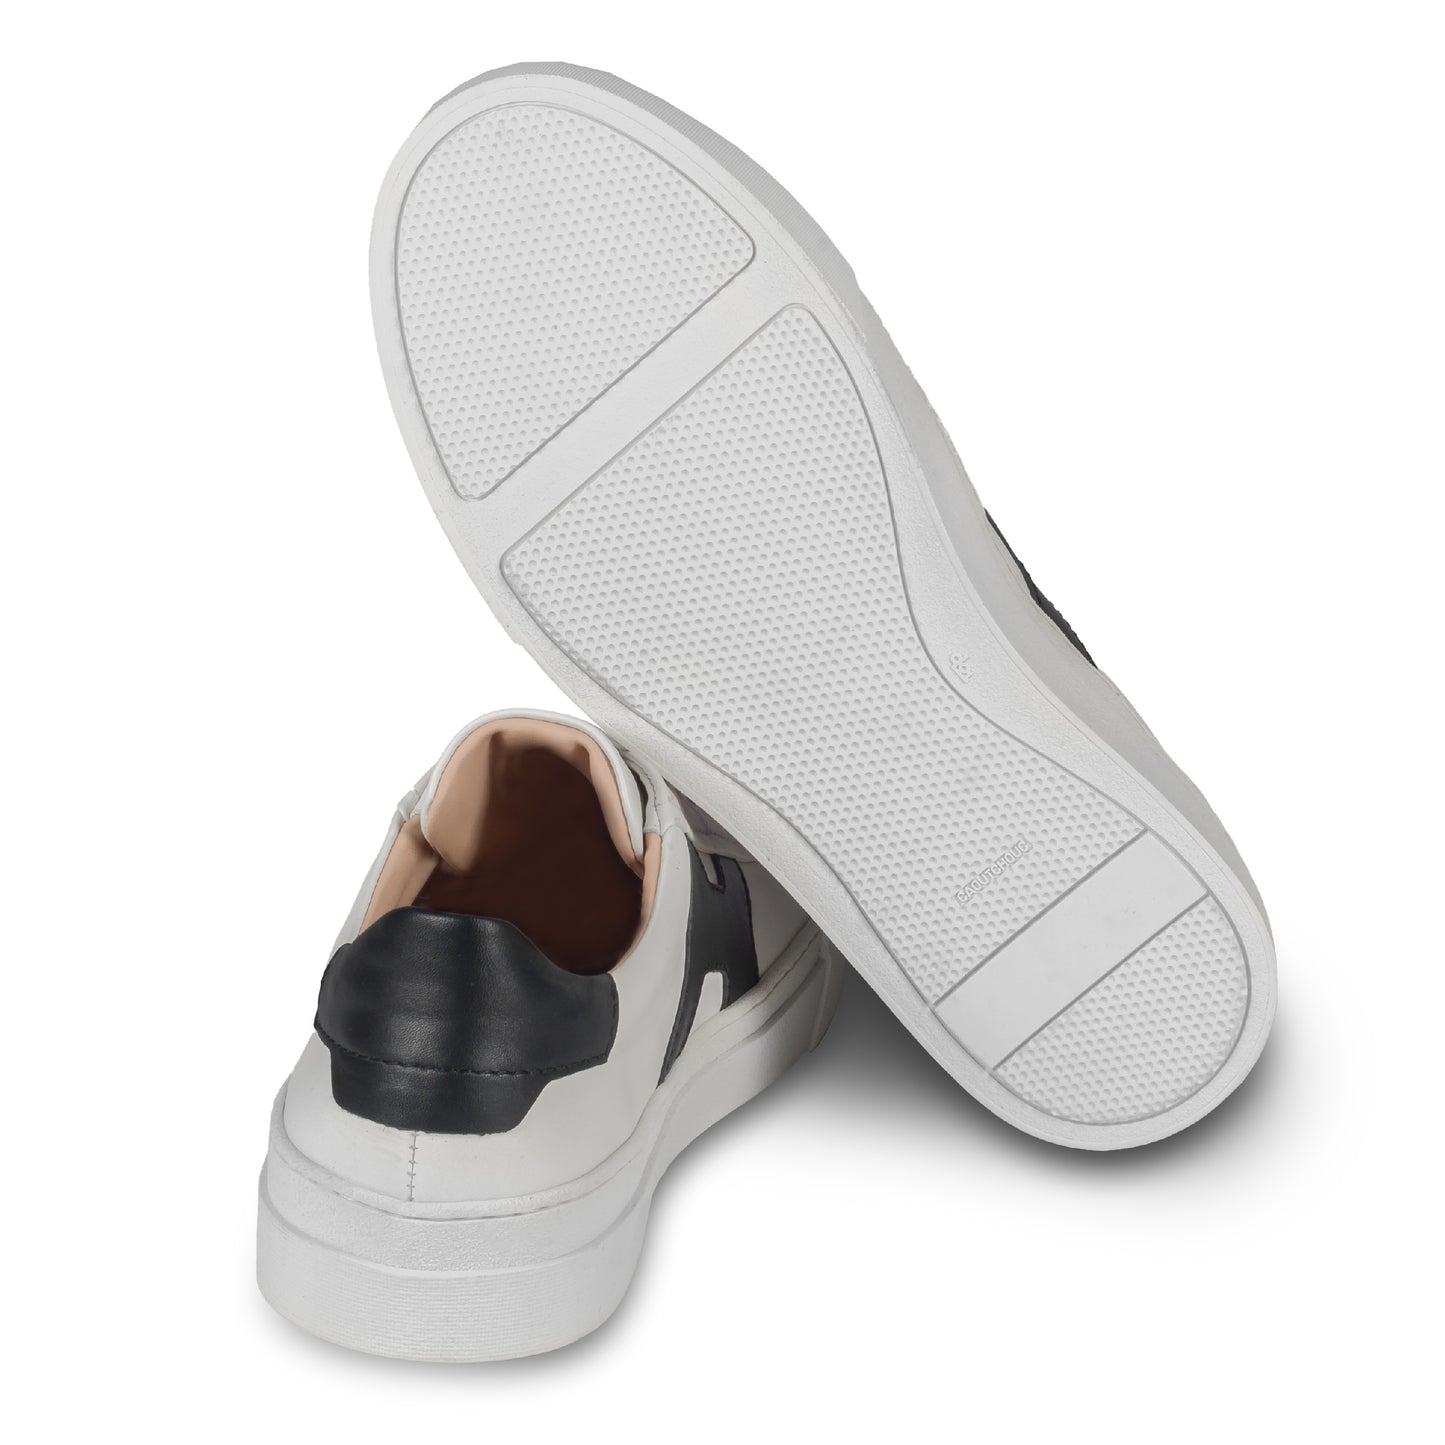 Rossano Bisconti – Italienische Herren Sneaker in weiß, mit schwarzen Applikationen im Santoni Style. Aus Kalbsleder mit weißer Sohle. Handgefertigt. Ansicht der Ferse und Sohlenunterseite.